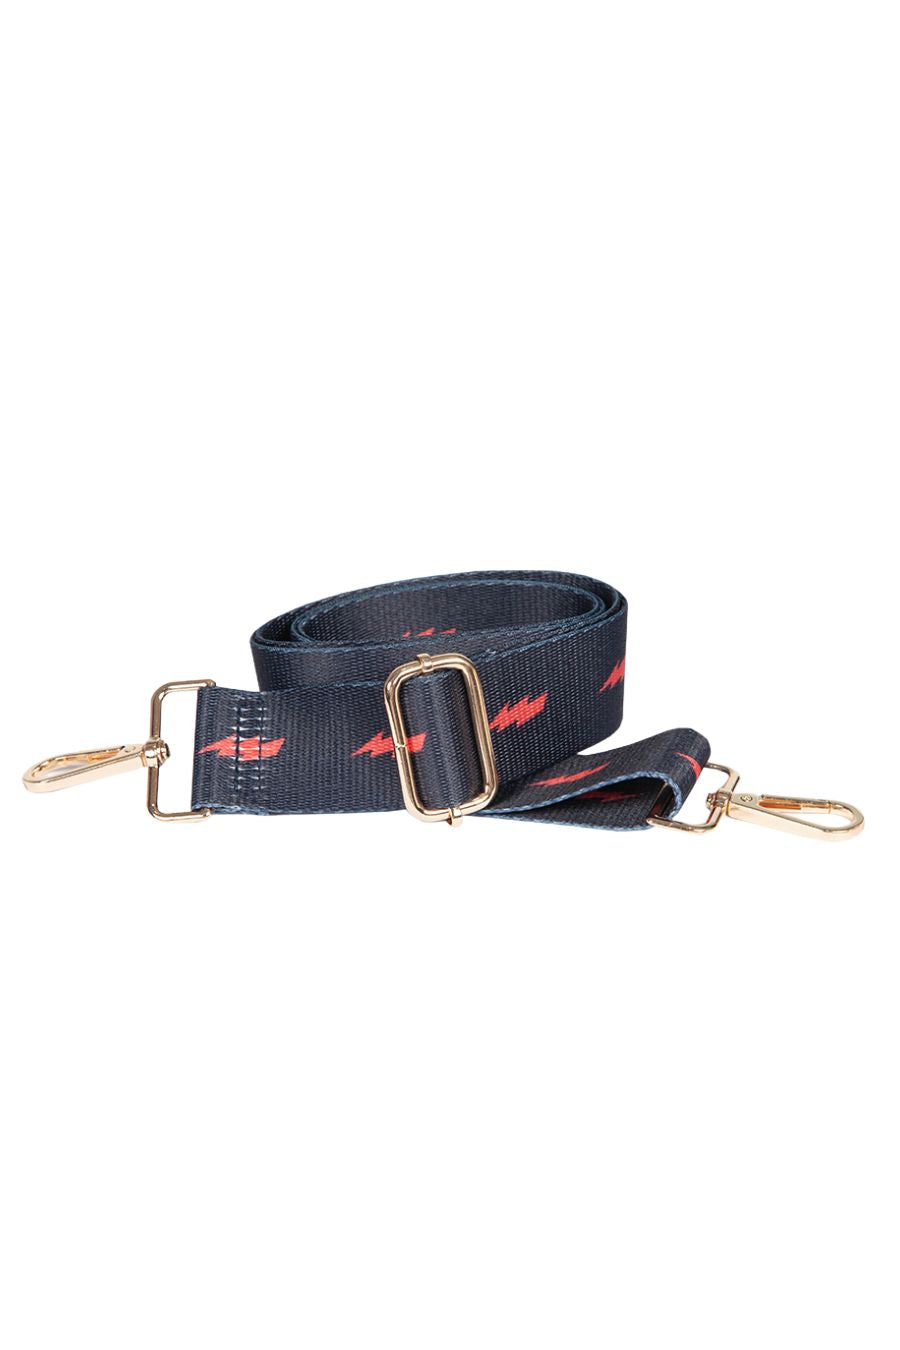 navy blue and red lightning bolt bag strap